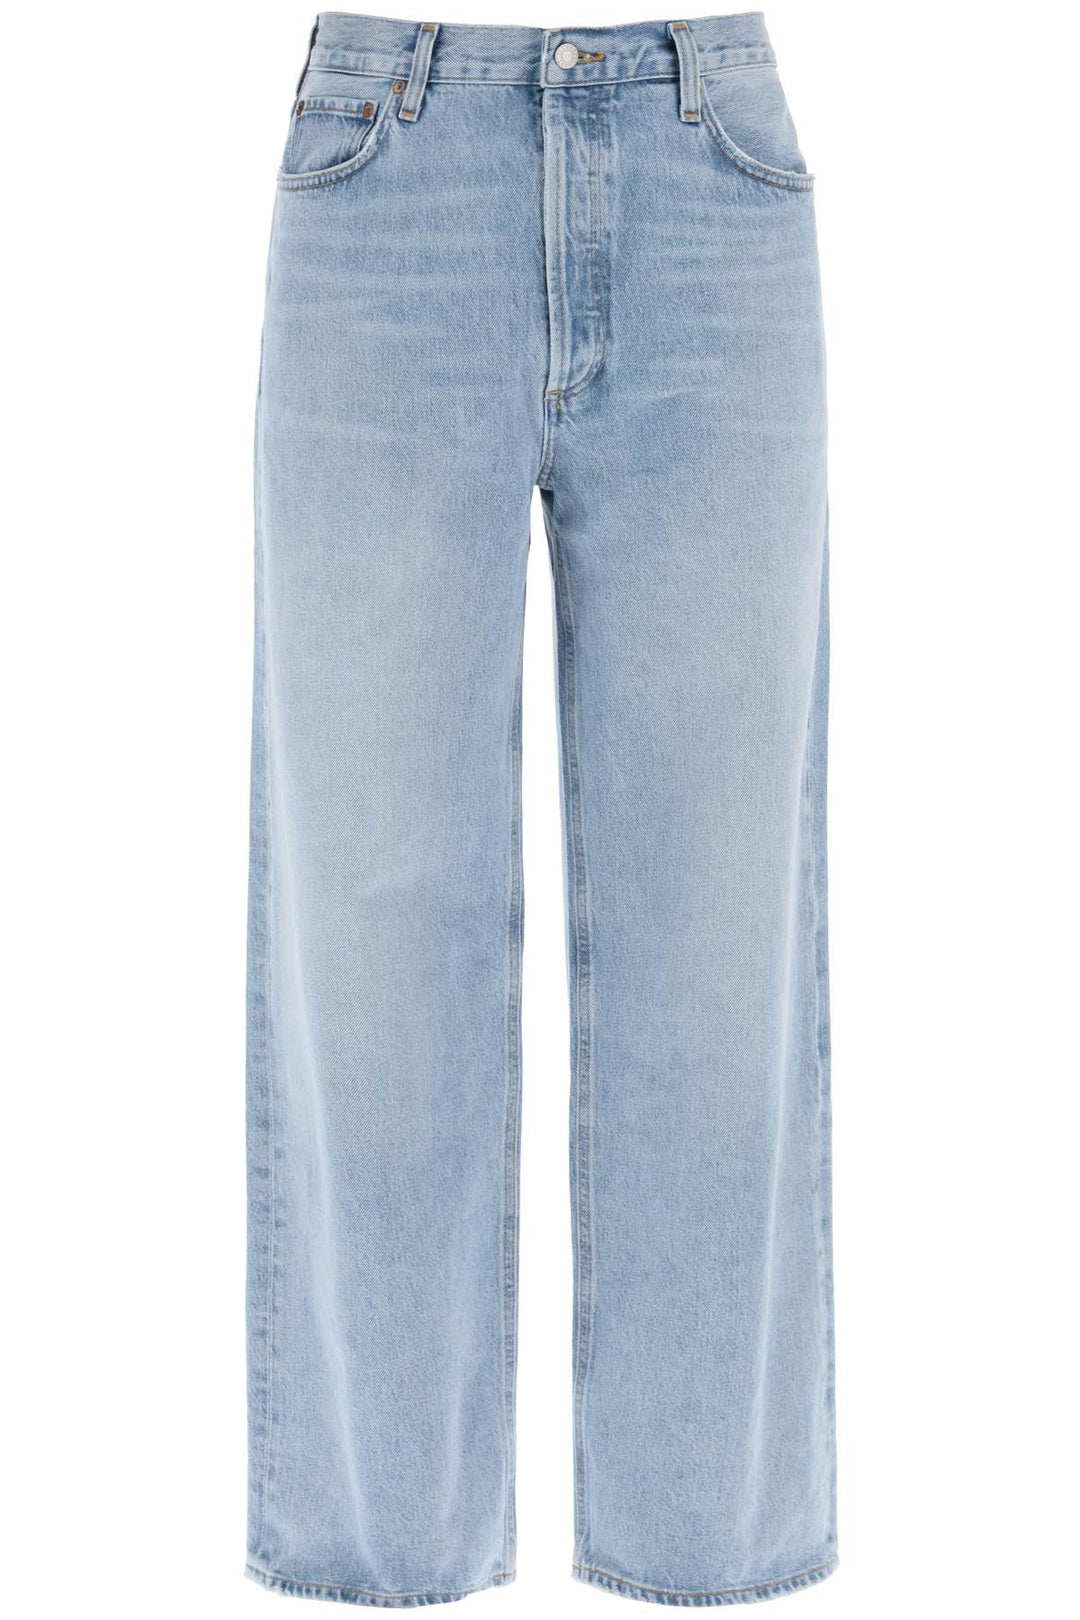 Agolde baggy slung jeans-0